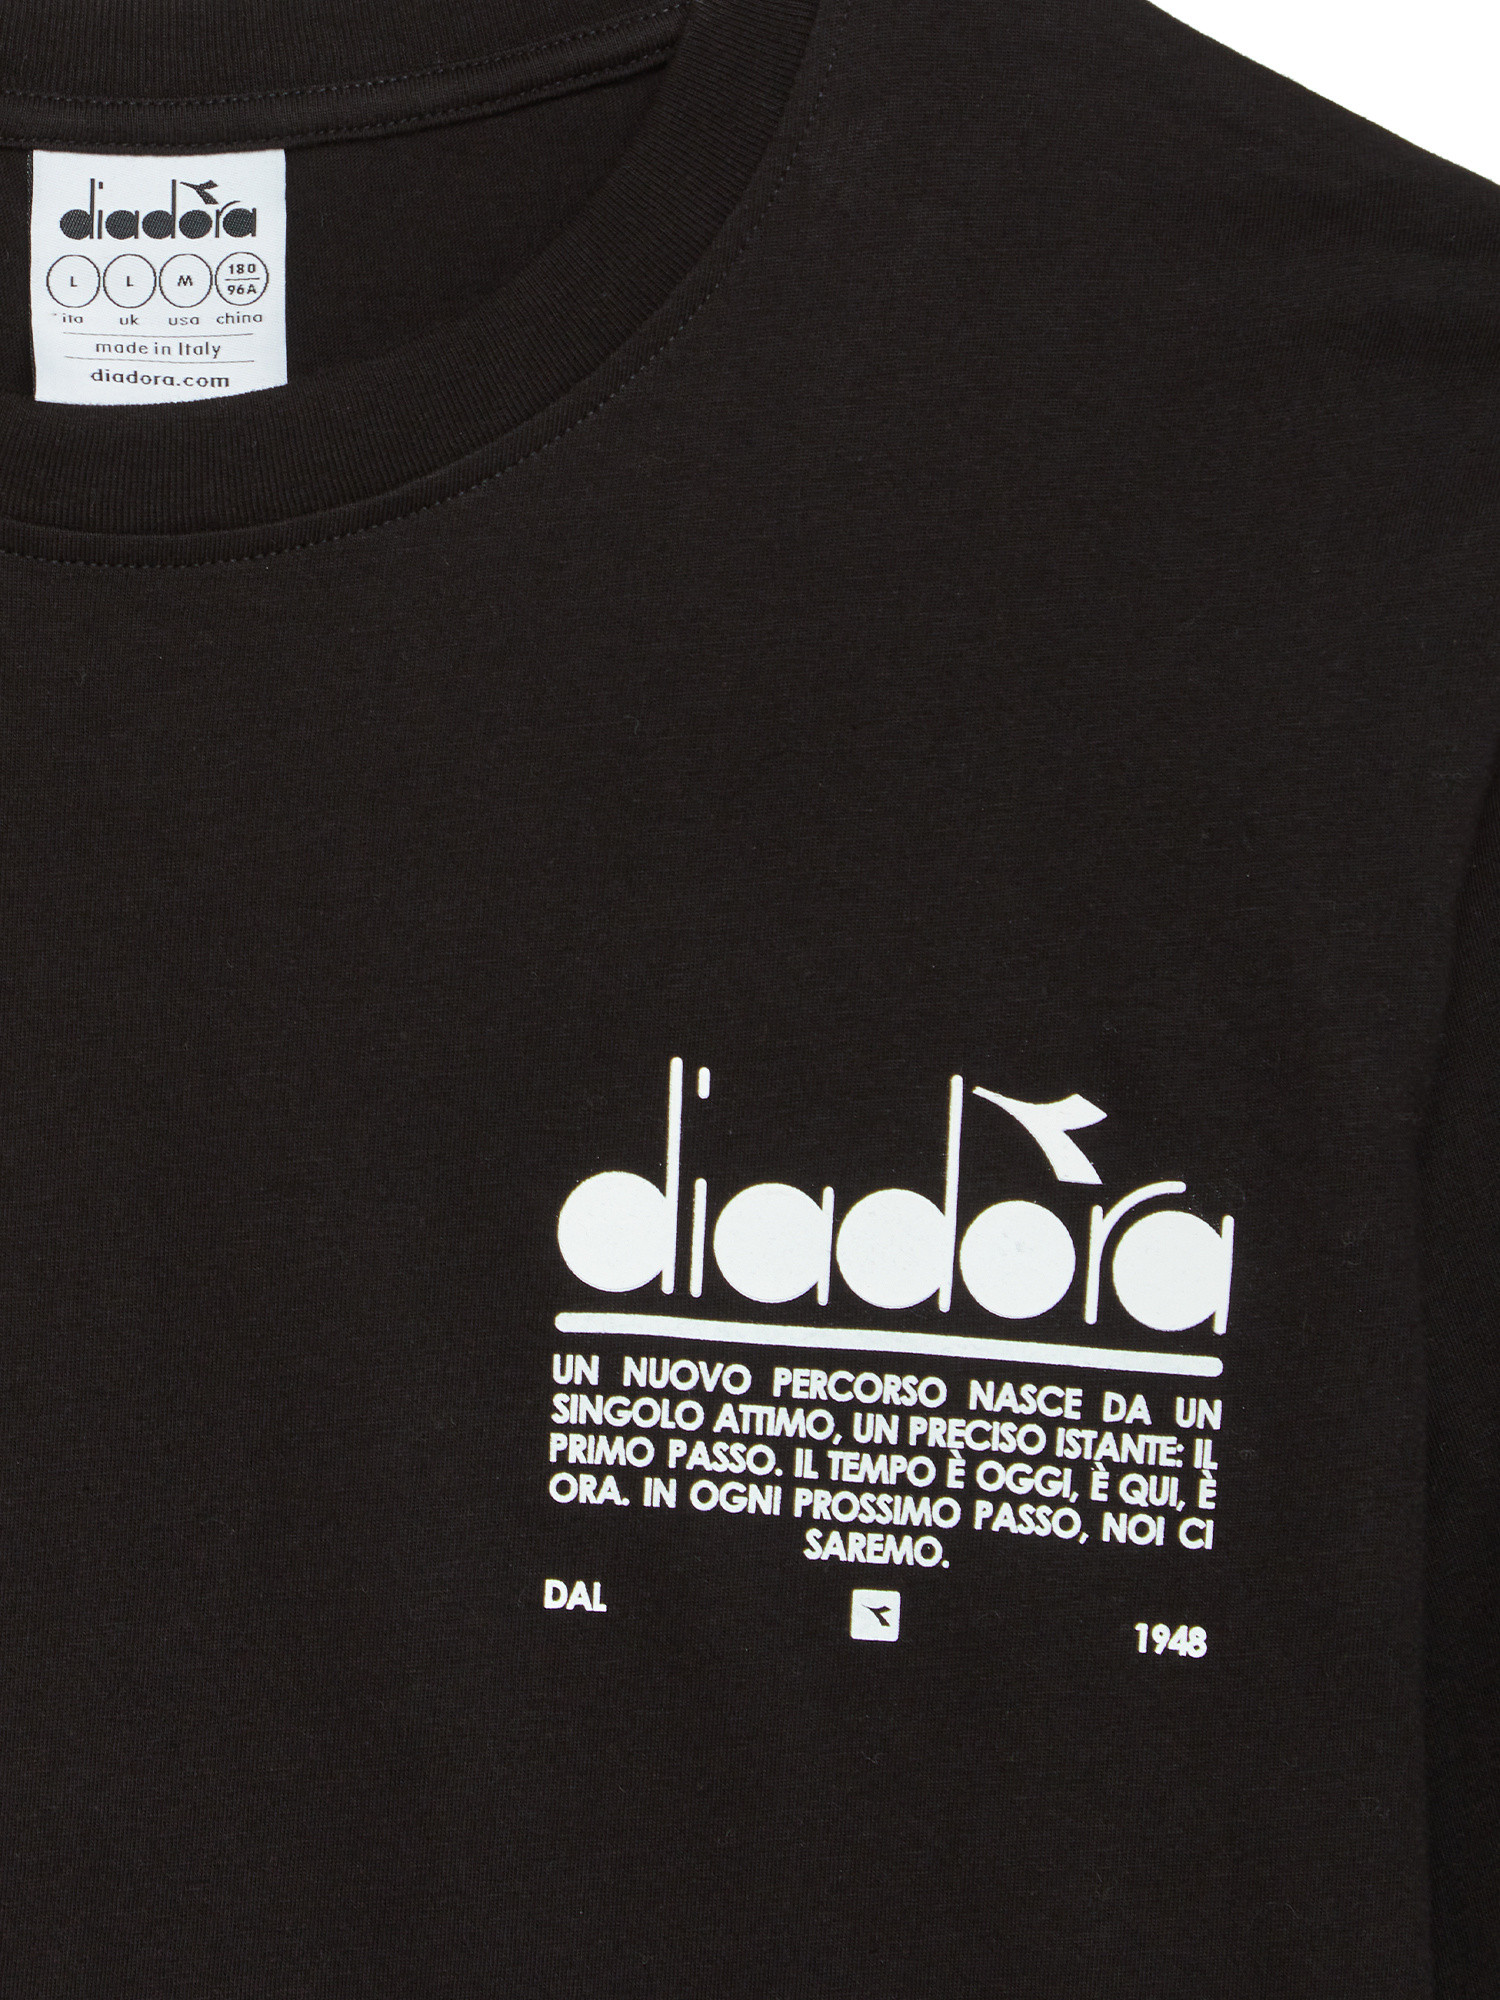 Diadora - Manifesto cotton T-shirt, Black, large image number 1